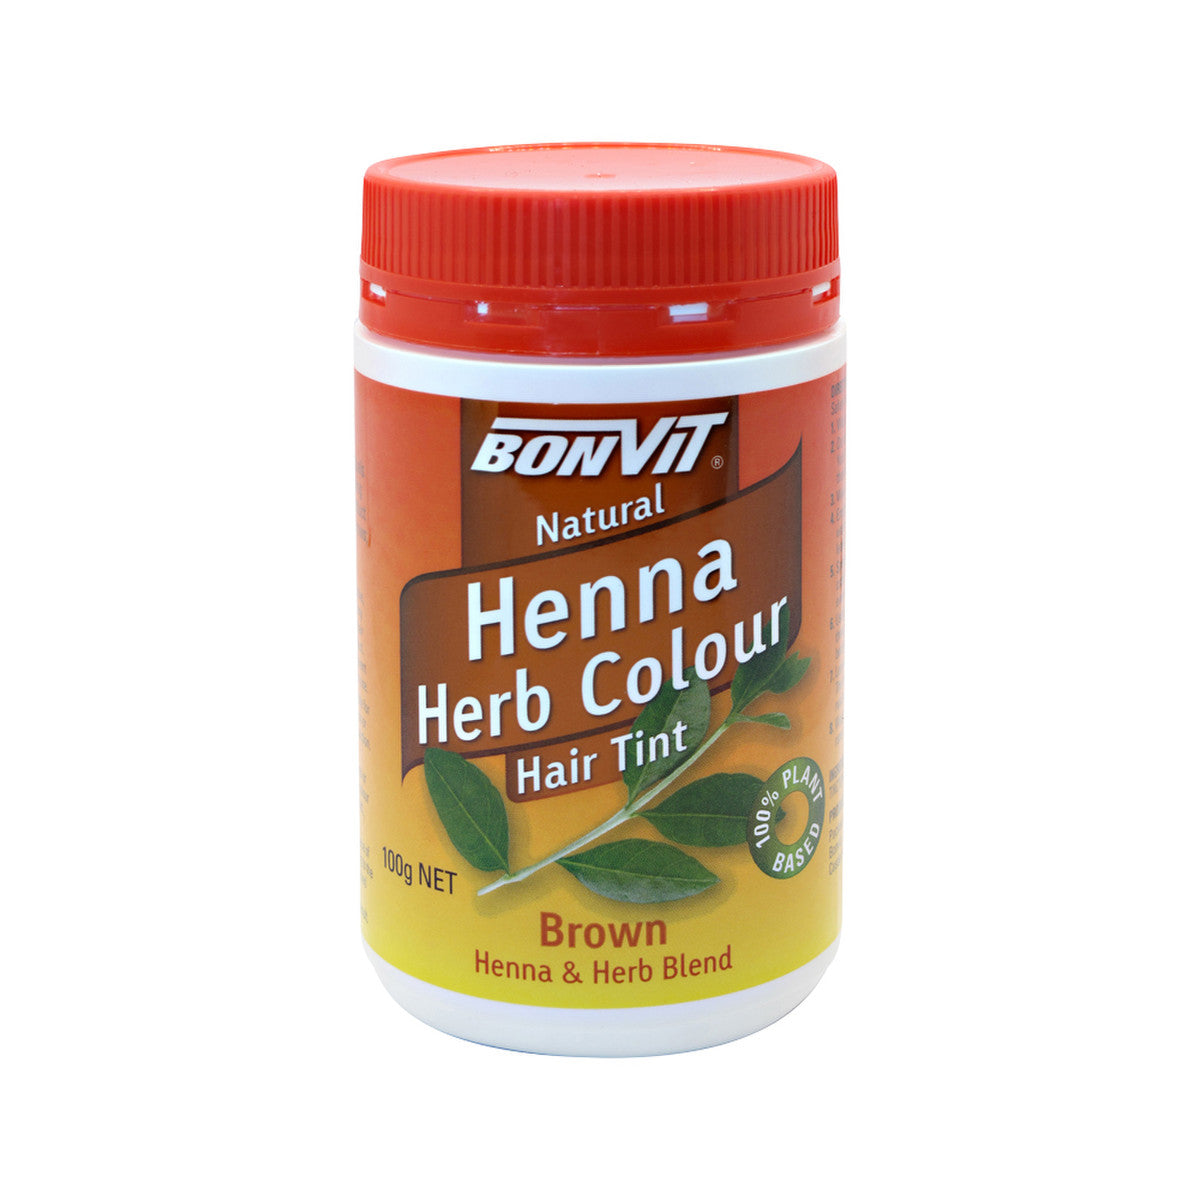 Bonvit - Henna Herb Colour Hair Tint Brown